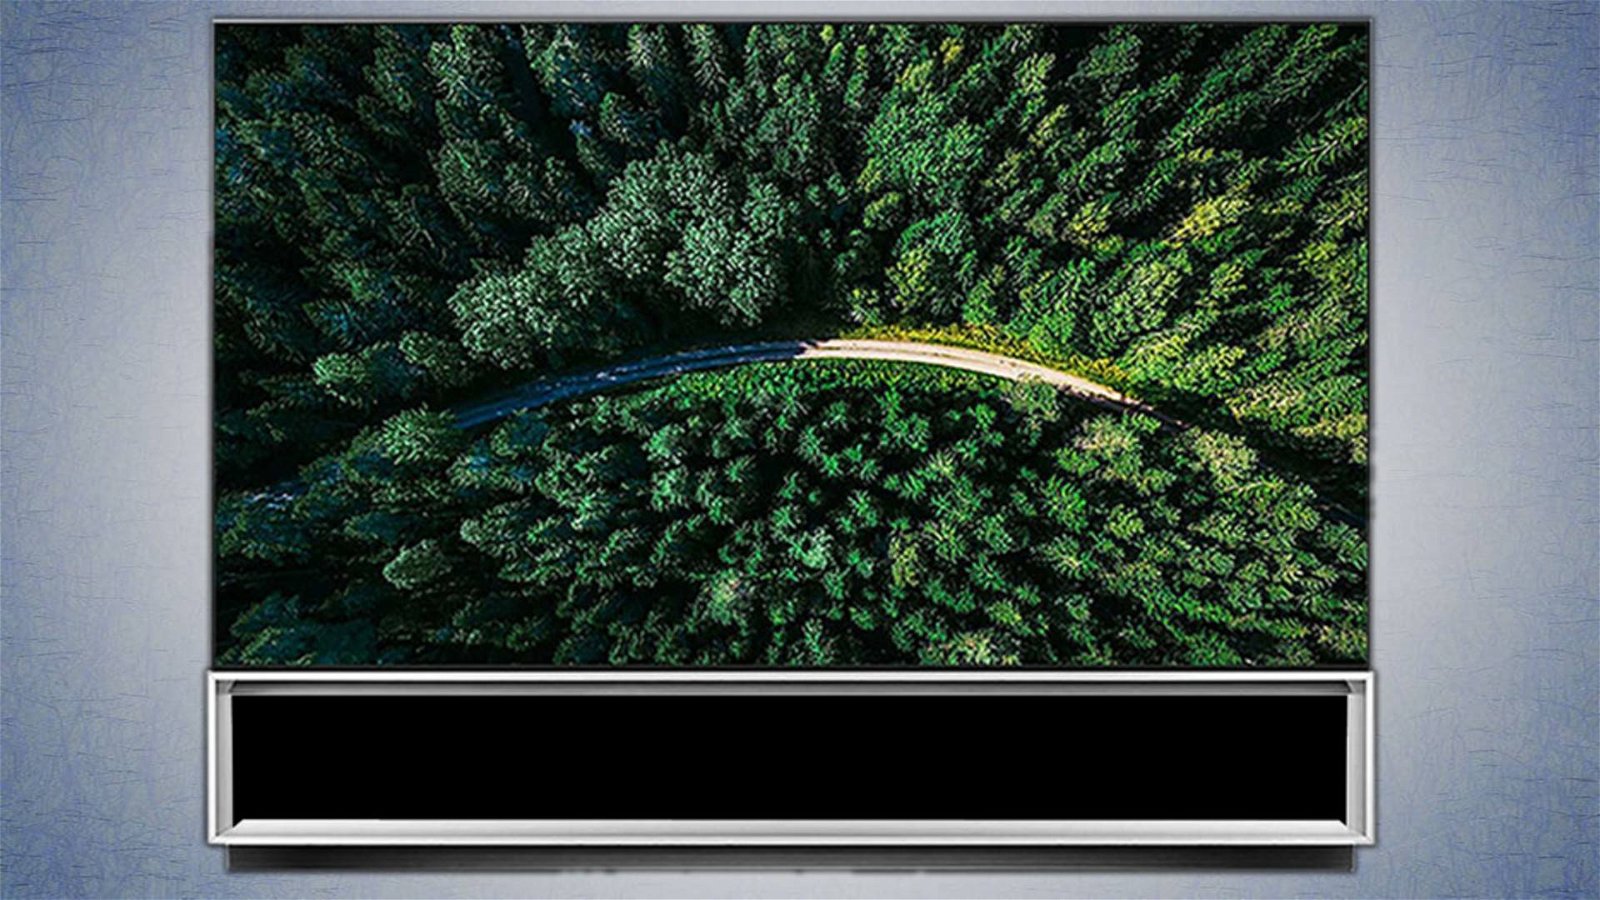 Immagine di Recensione LG Z9 OLED 8K